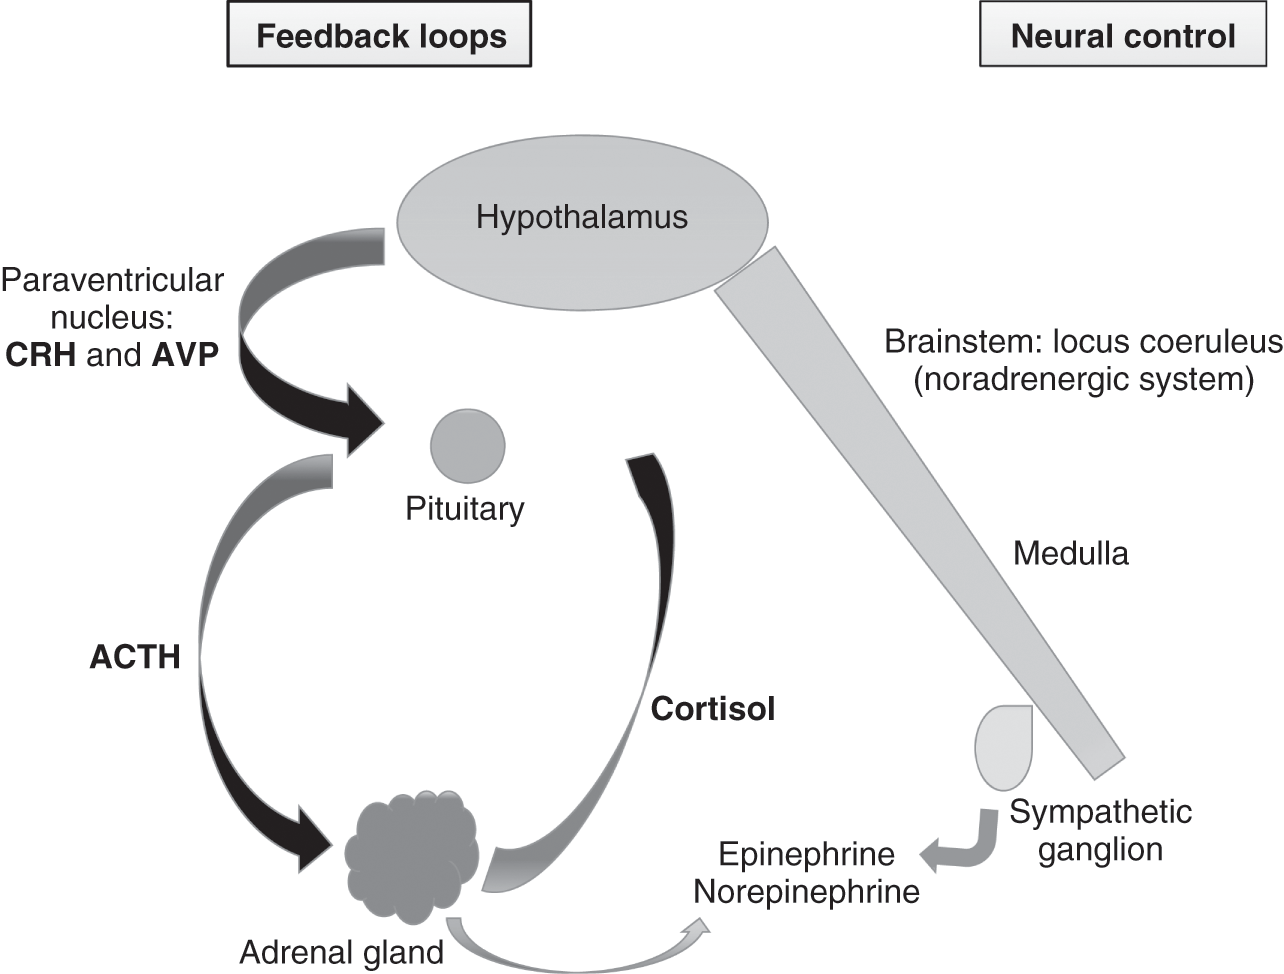 epinephrine and norepinephrine feedback loop